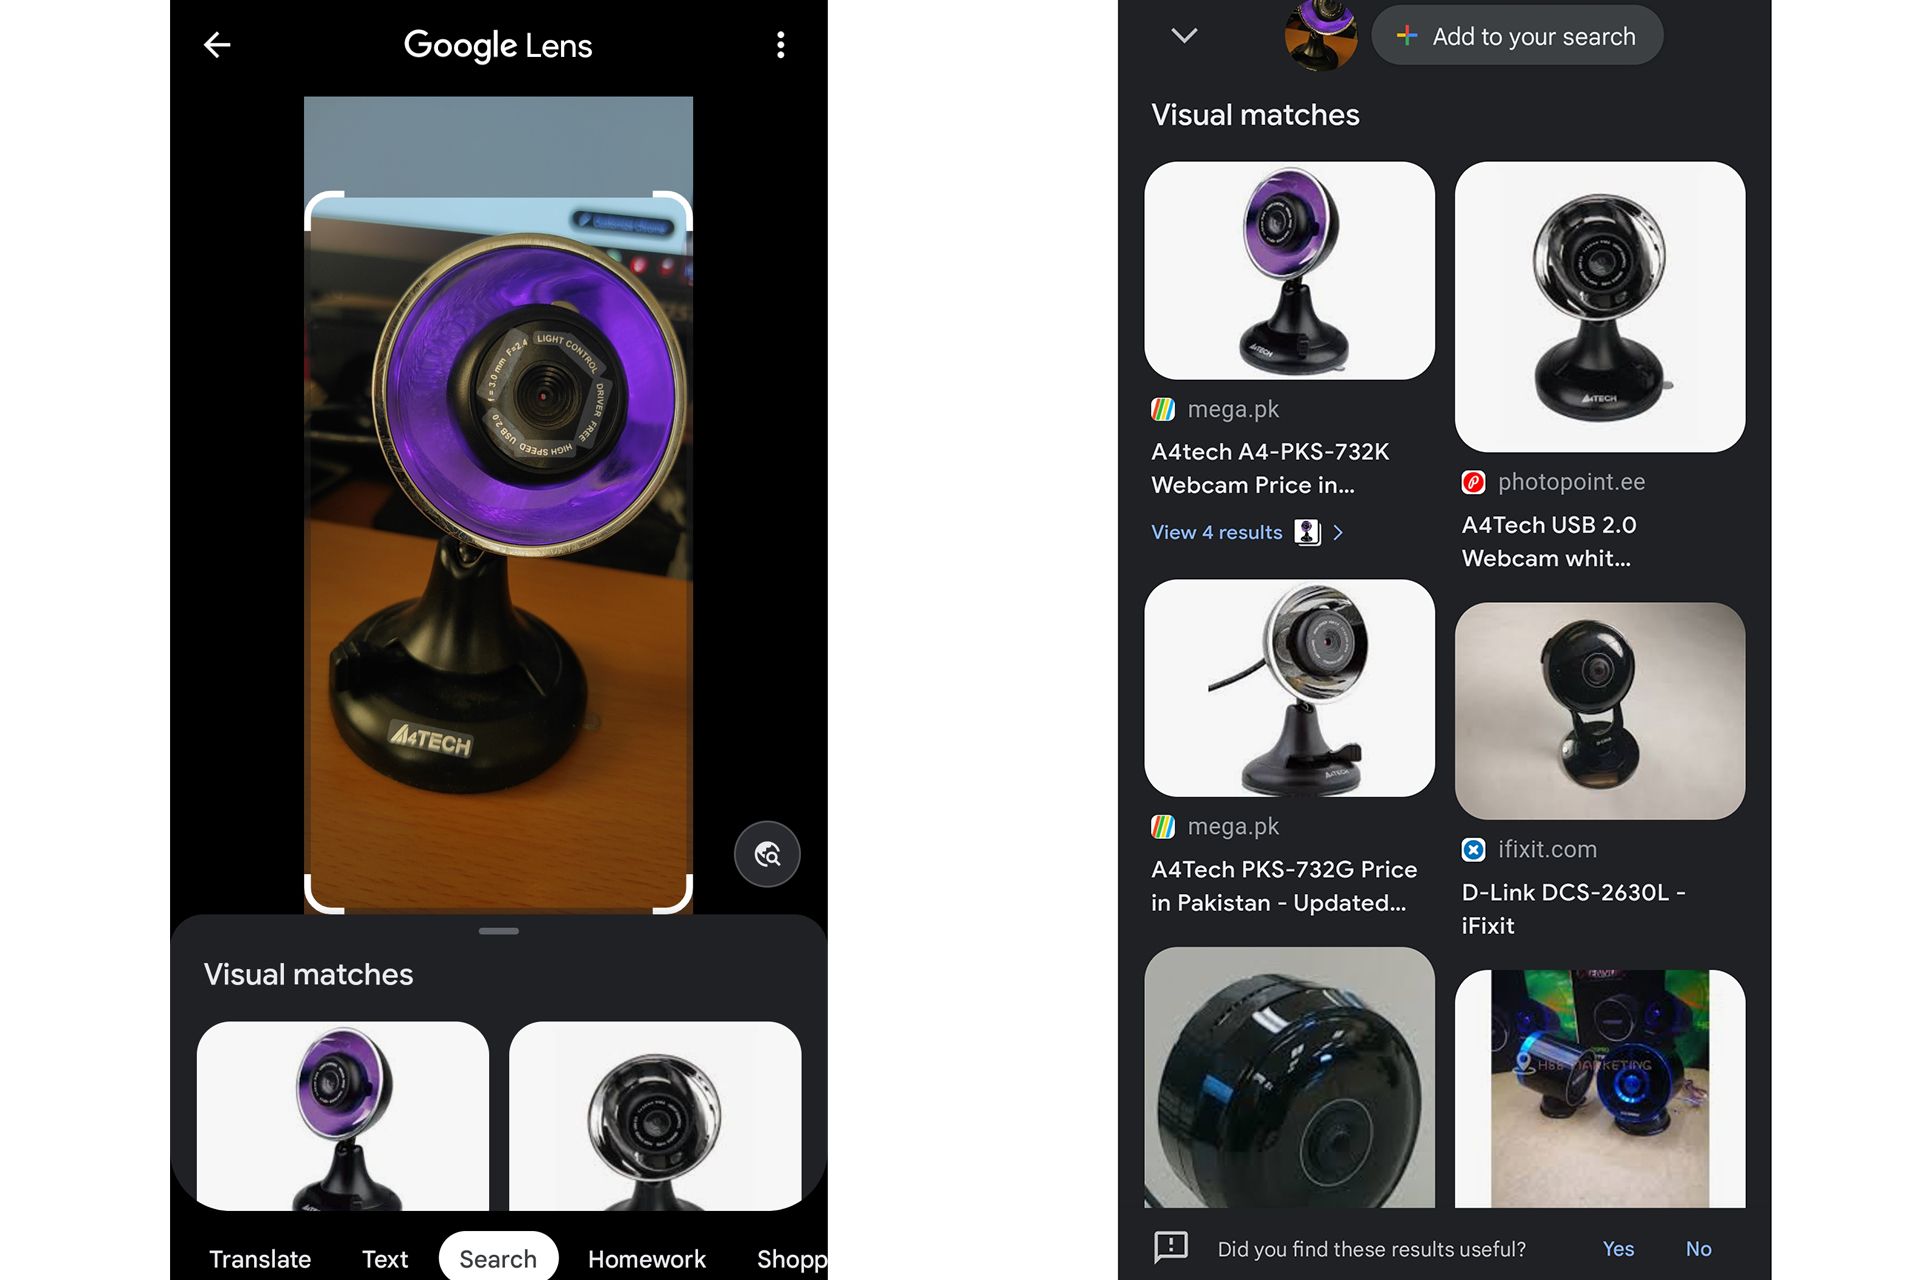 اپ گوگل لنز در حال اسکن وب کم قدیمی و نمایش نمونه های مشابه